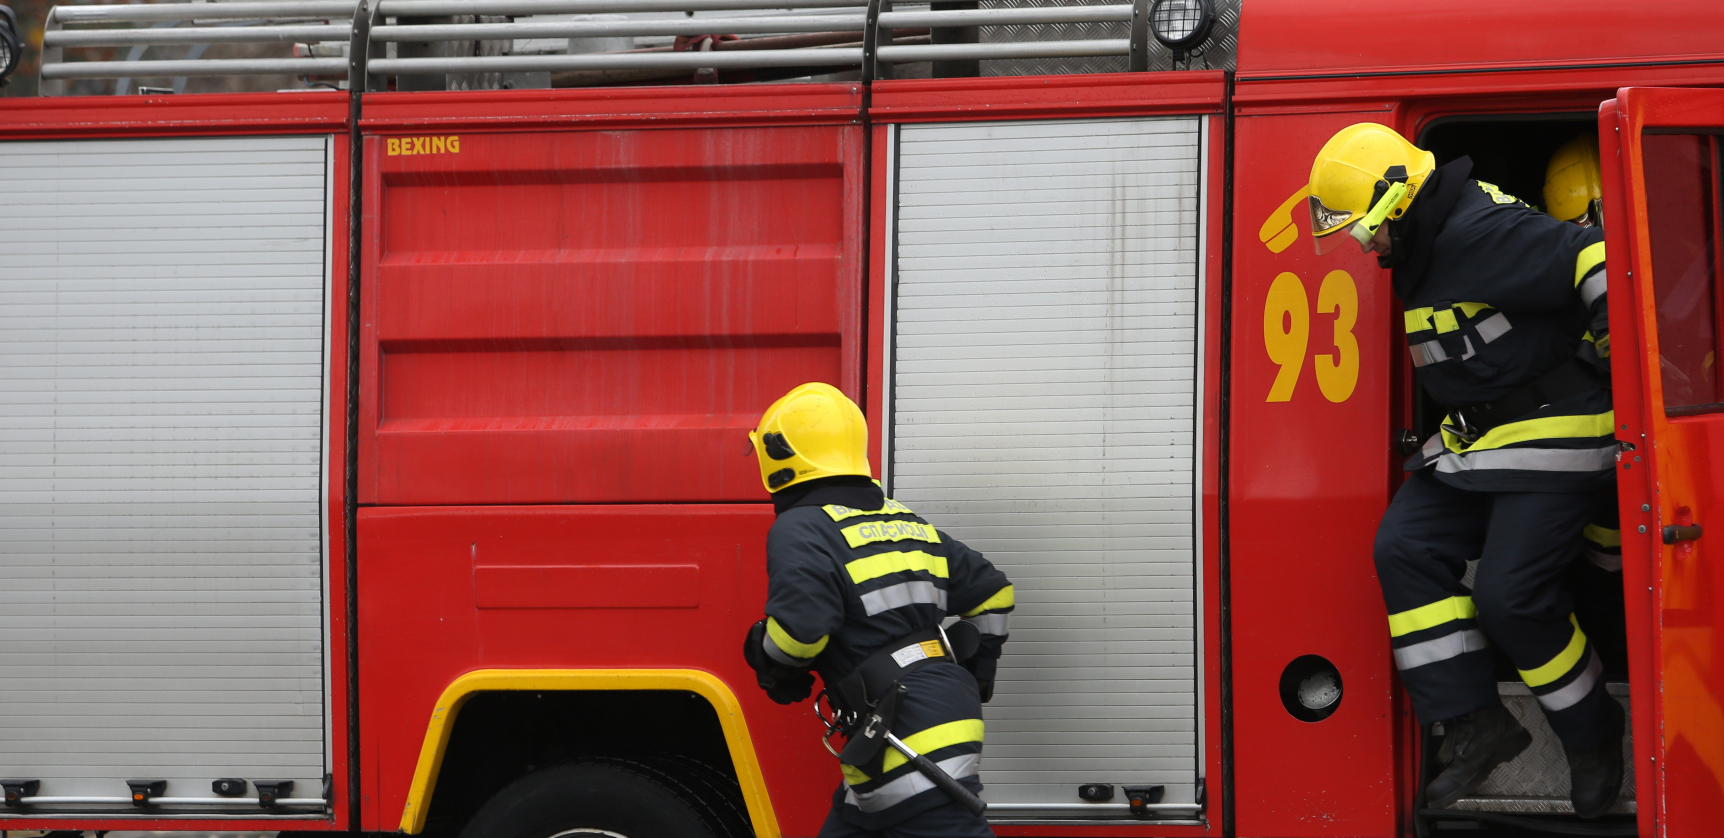 ZAPALIO SE MAGACIN U LESKOVCU Radnik povređen dok je gasio vatru (FOTO)